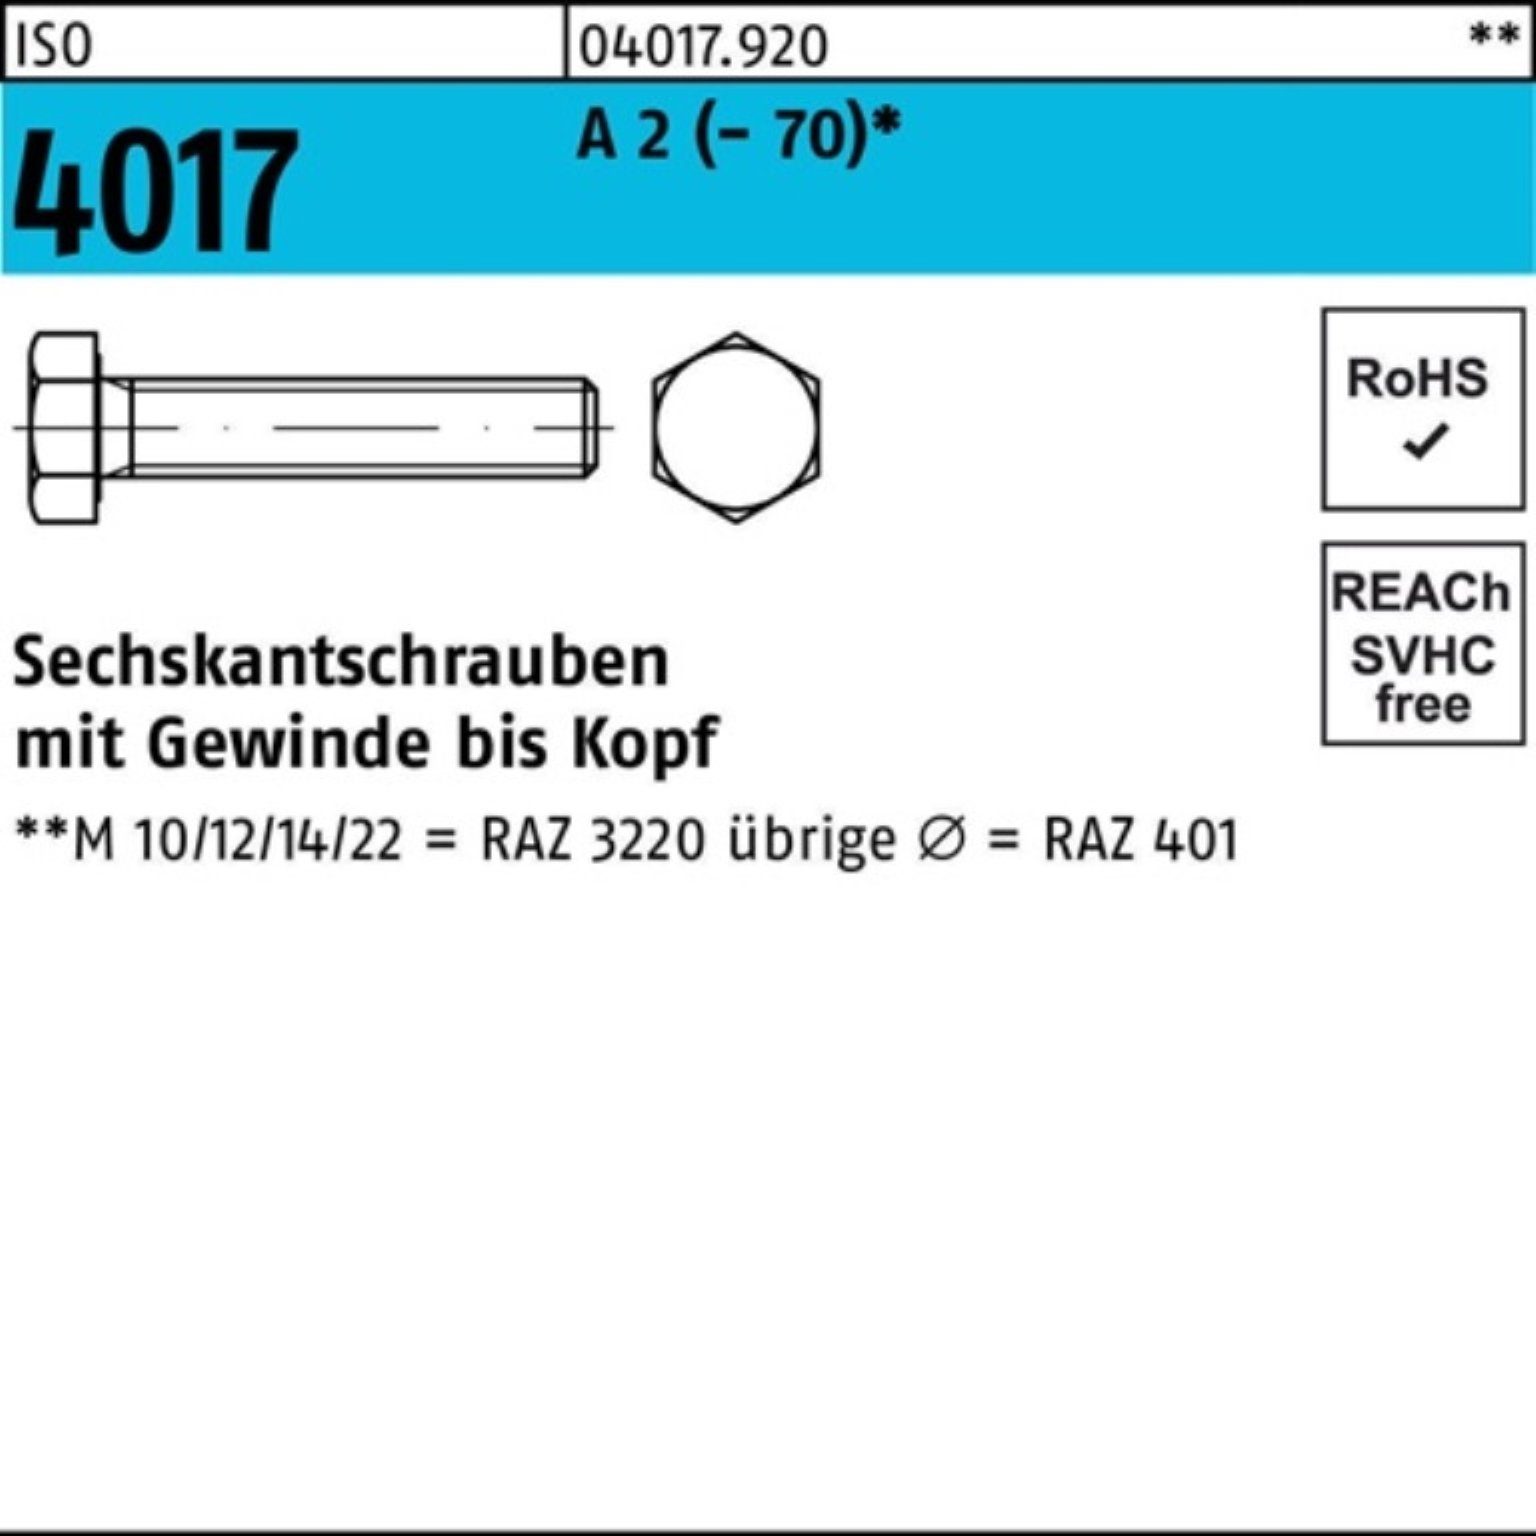 Bufab Sechskantschraube 500er Pack VG 500 Sechskantschraube 4017 2 Stück A M5x (70) ISO 18